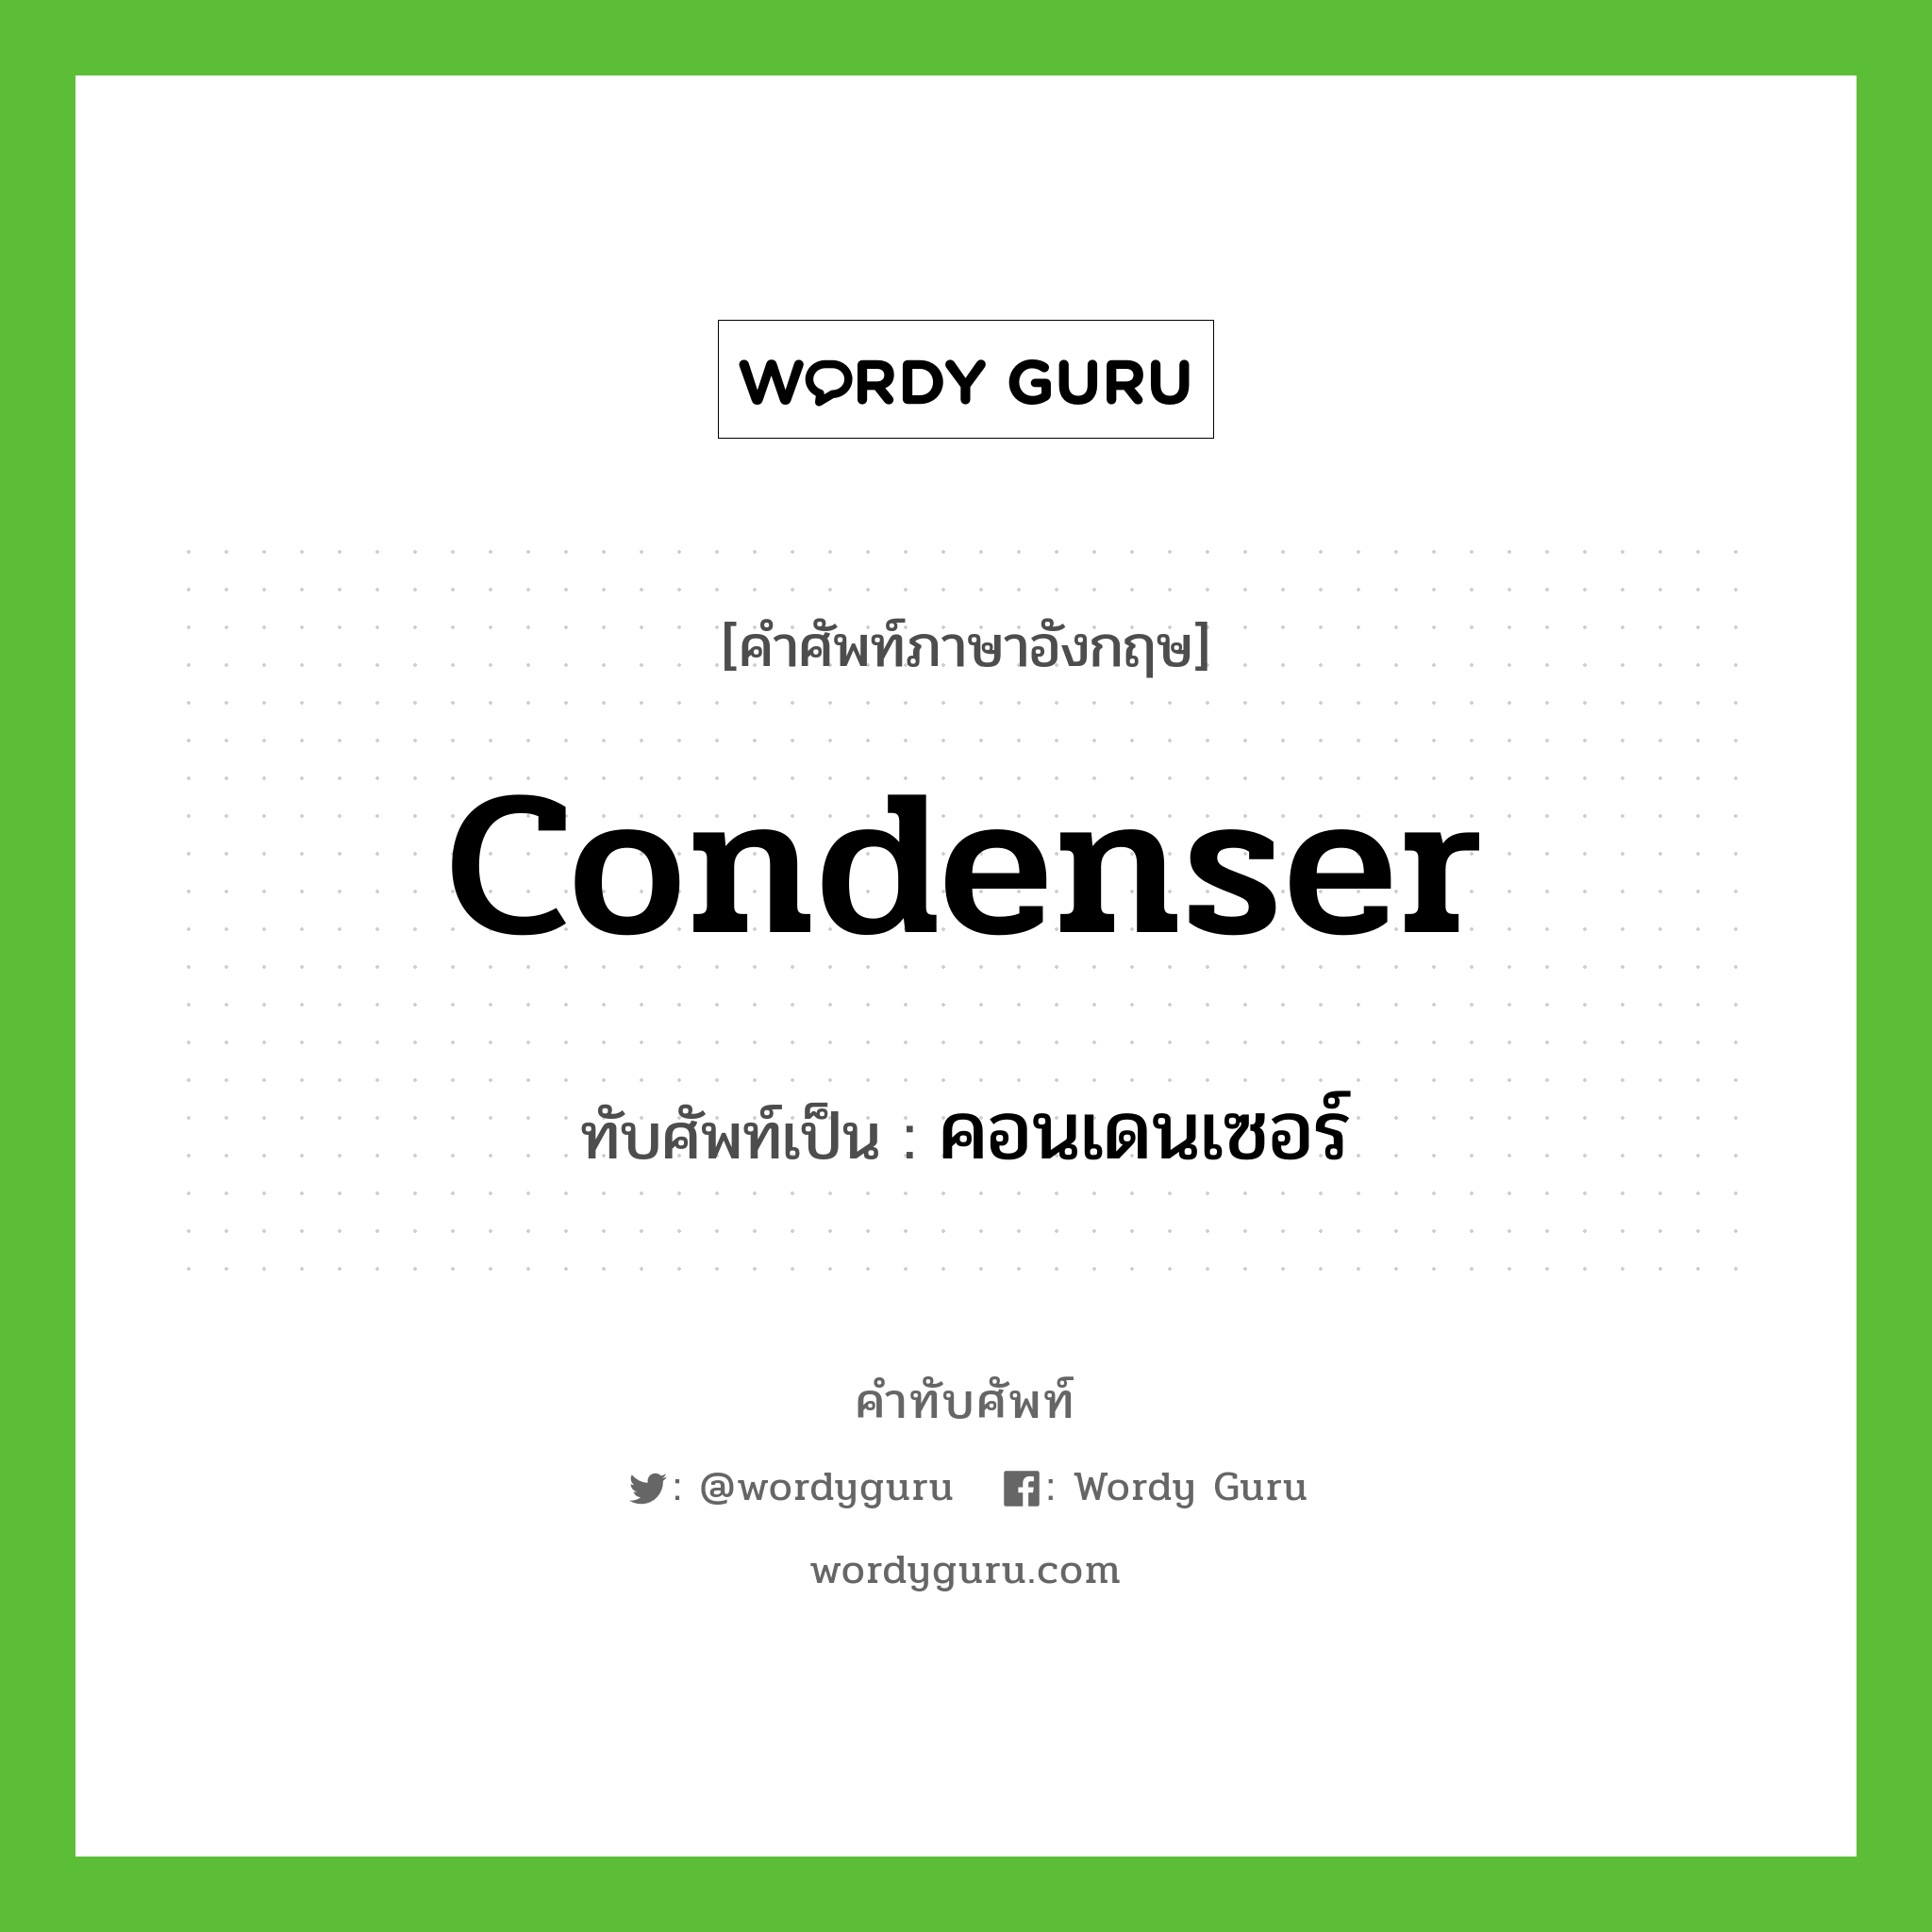 condenser เขียนเป็นคำไทยว่าอะไร?, คำศัพท์ภาษาอังกฤษ condenser ทับศัพท์เป็น คอนเดนเซอร์